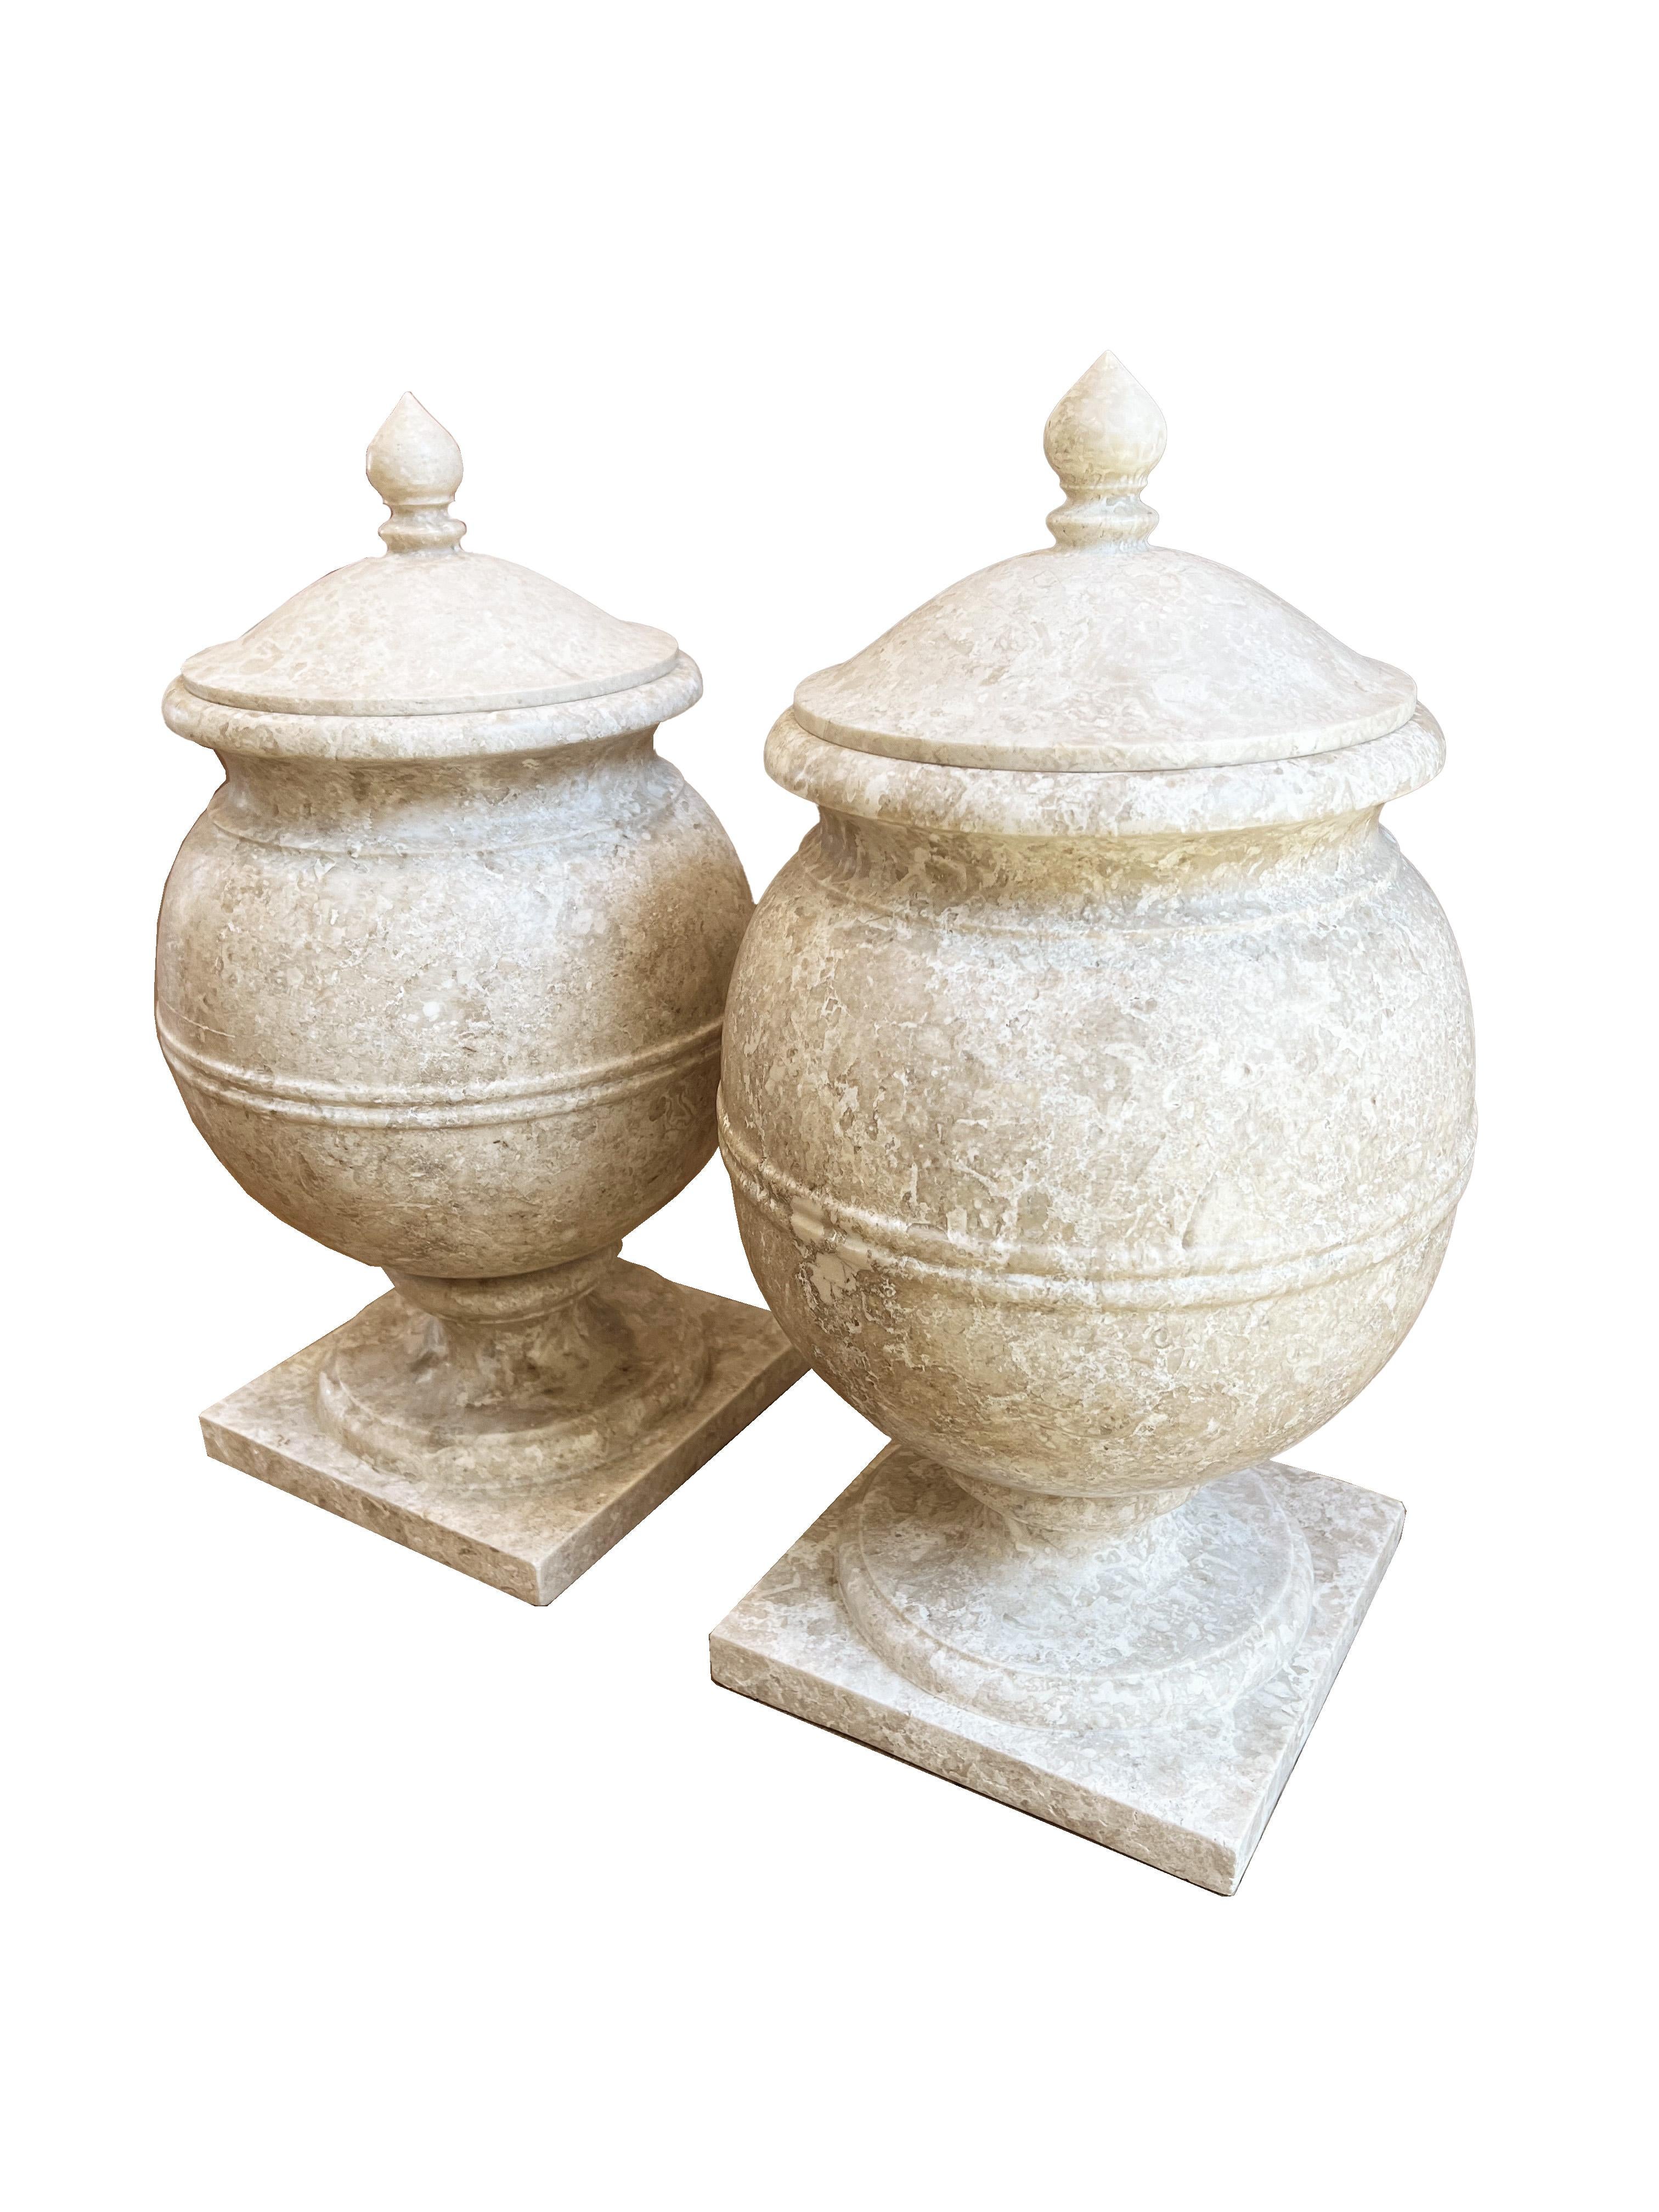 Rehaussez votre maison ou votre jardin avec cette paire d'urnes en marbre, chacune étant un chef-d'œuvre de design et d'artisanat. Ces urnes solides et lourdes soulignent la qualité du marbre et l'habileté avec laquelle elles ont été créées. Les